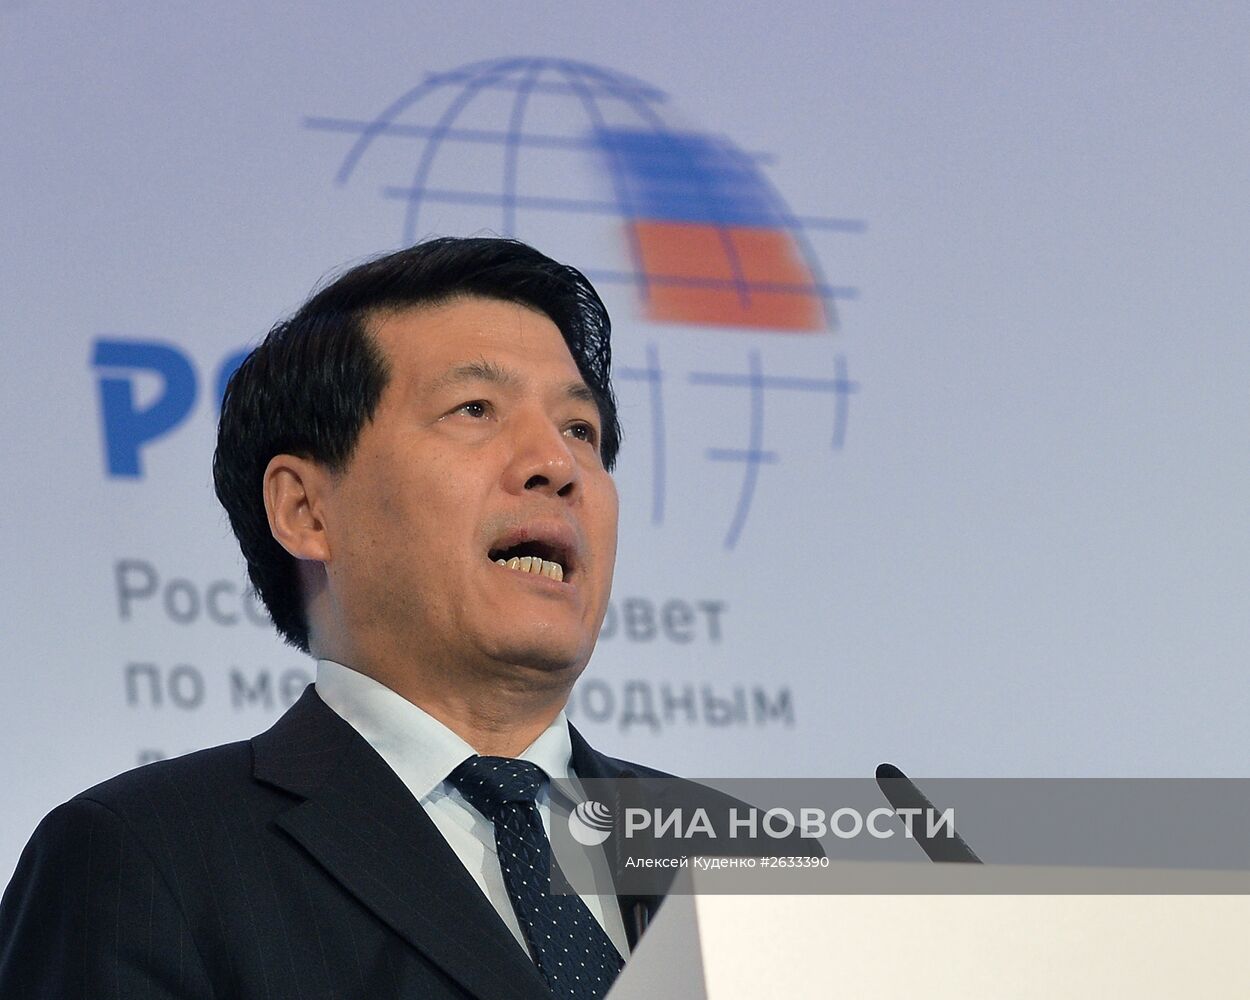 Международная конференция "Россия - Китай: новое партнерство в меняющемся мире"